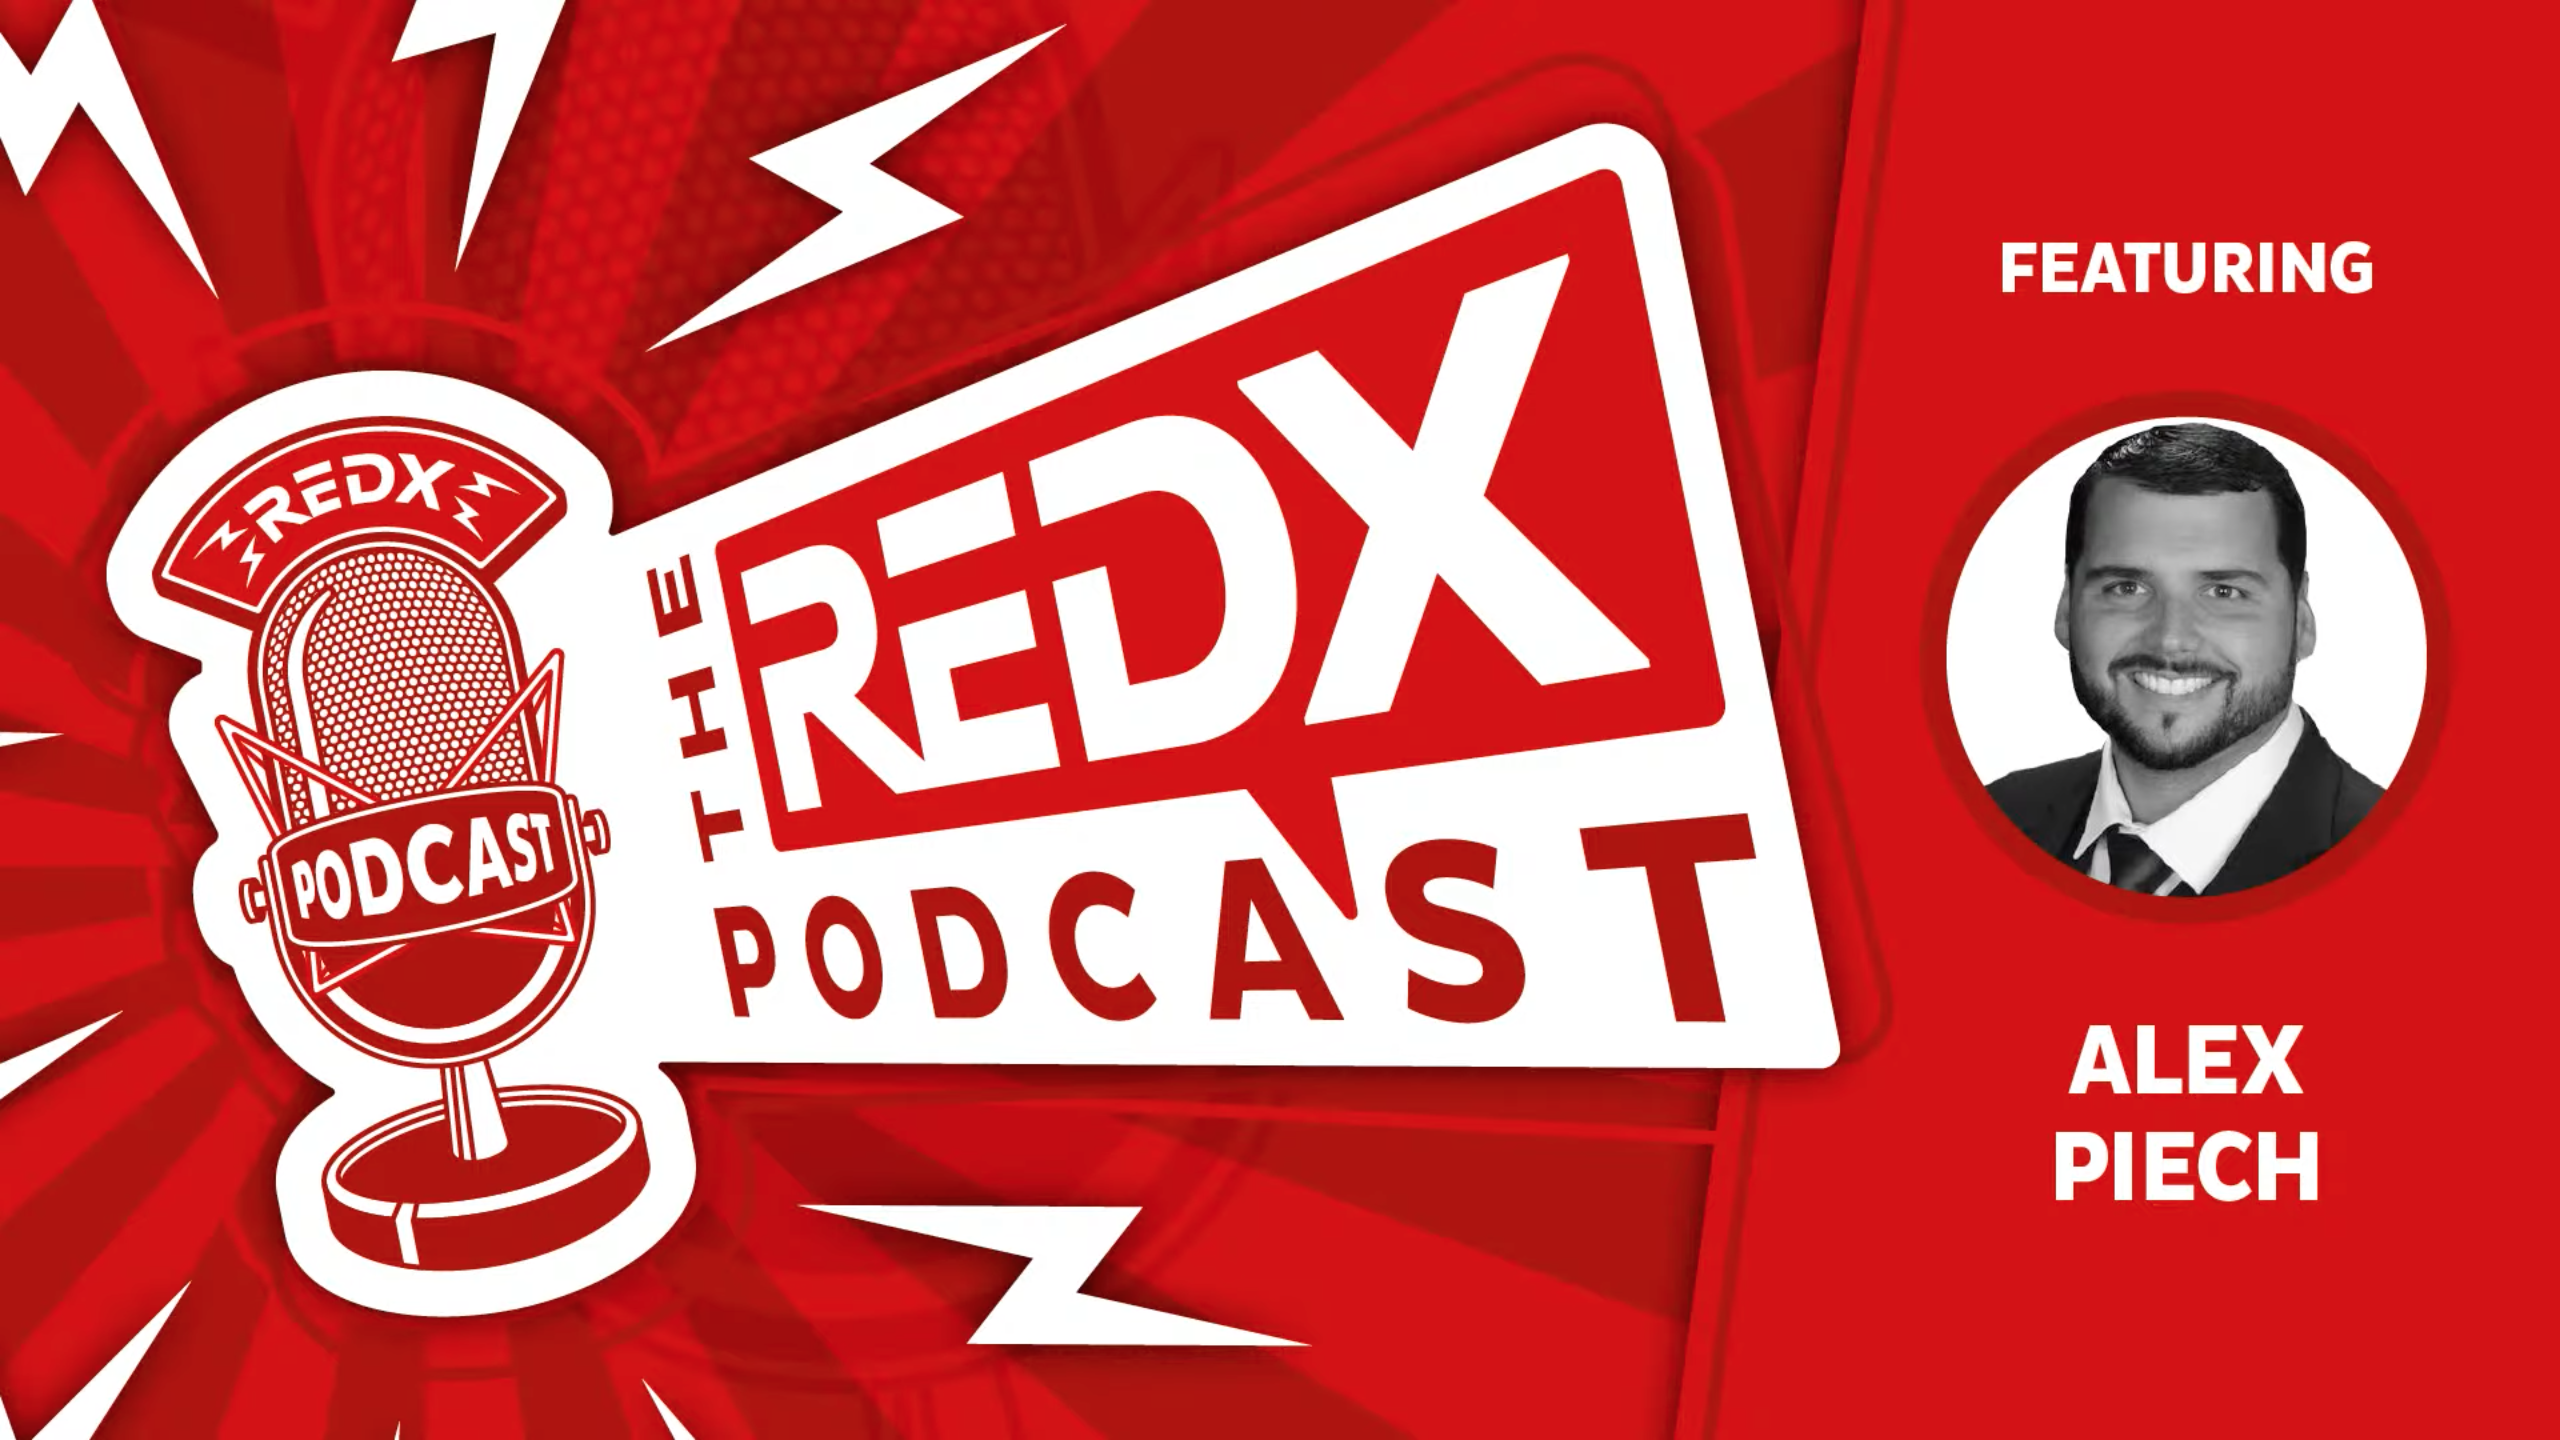 REDX Podcast with Alex Piech